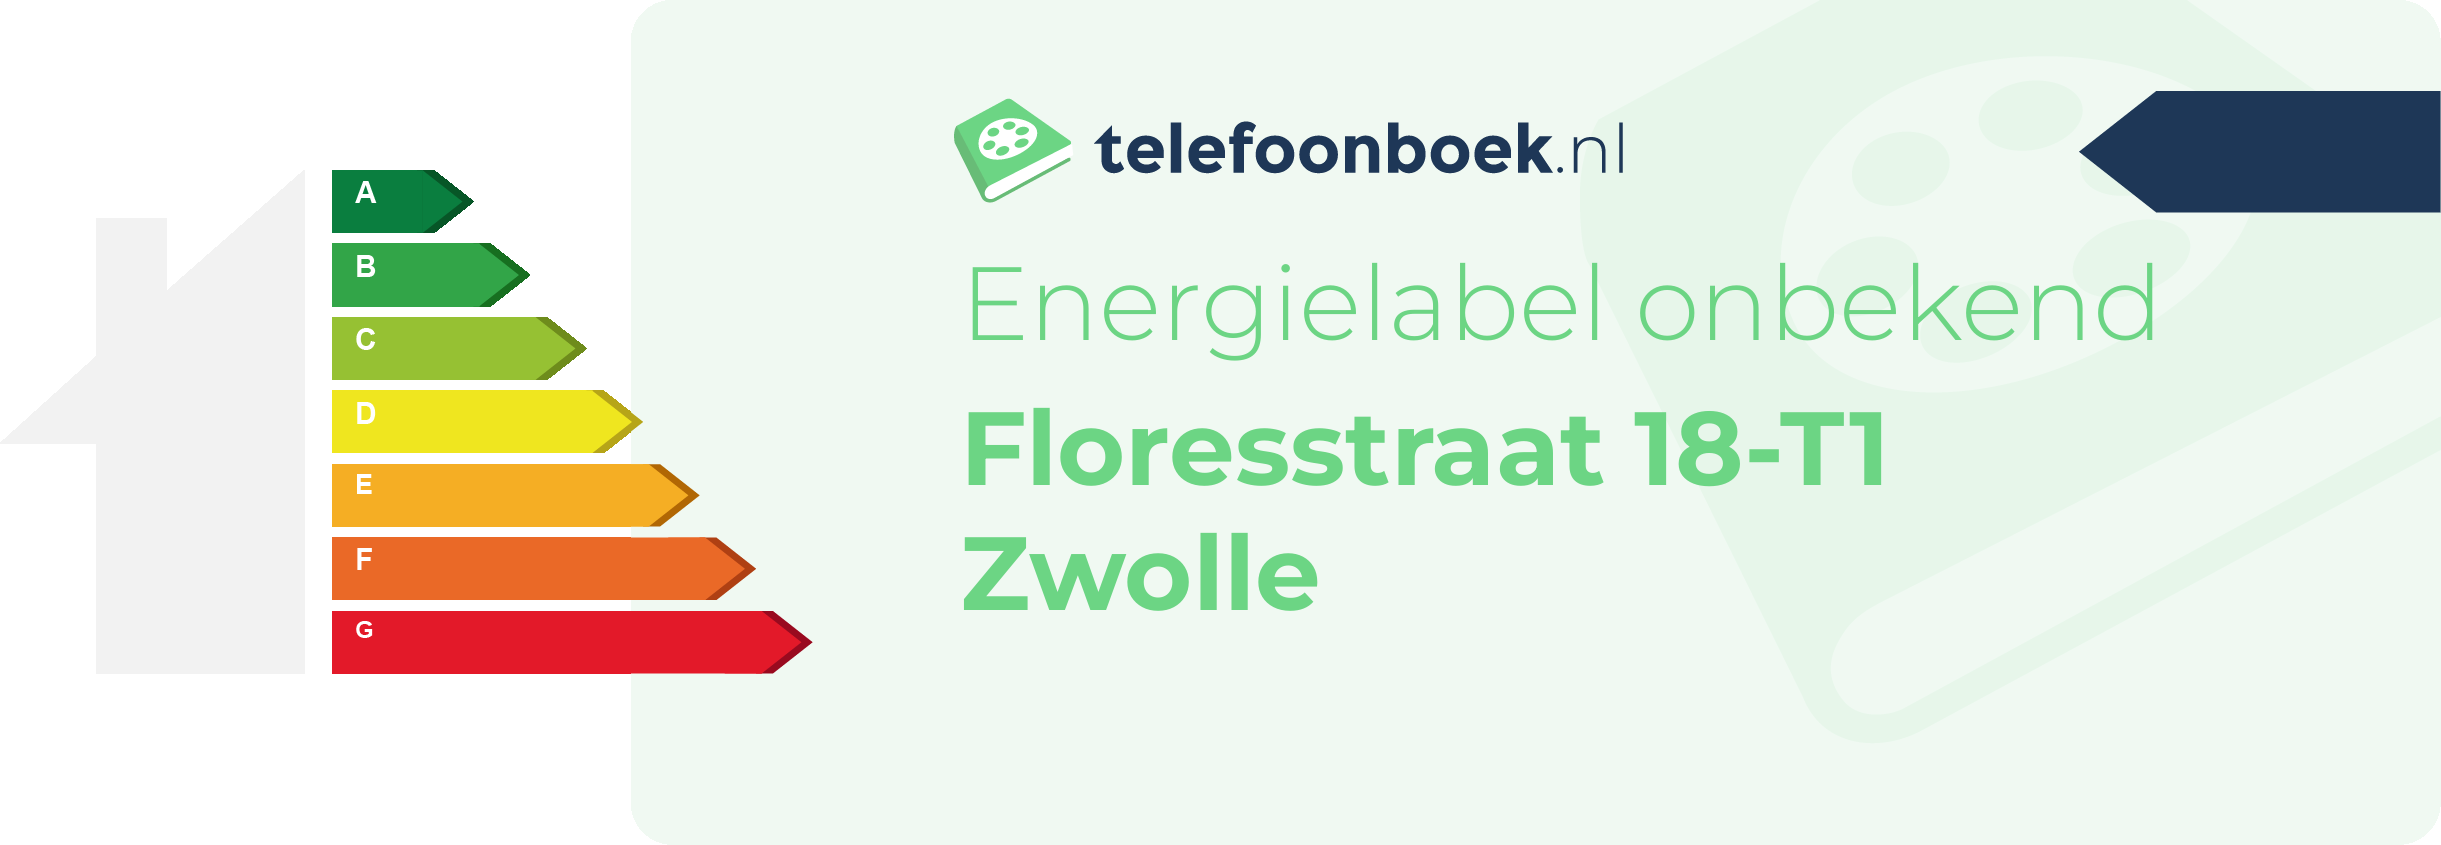 Energielabel Floresstraat 18-T1 Zwolle